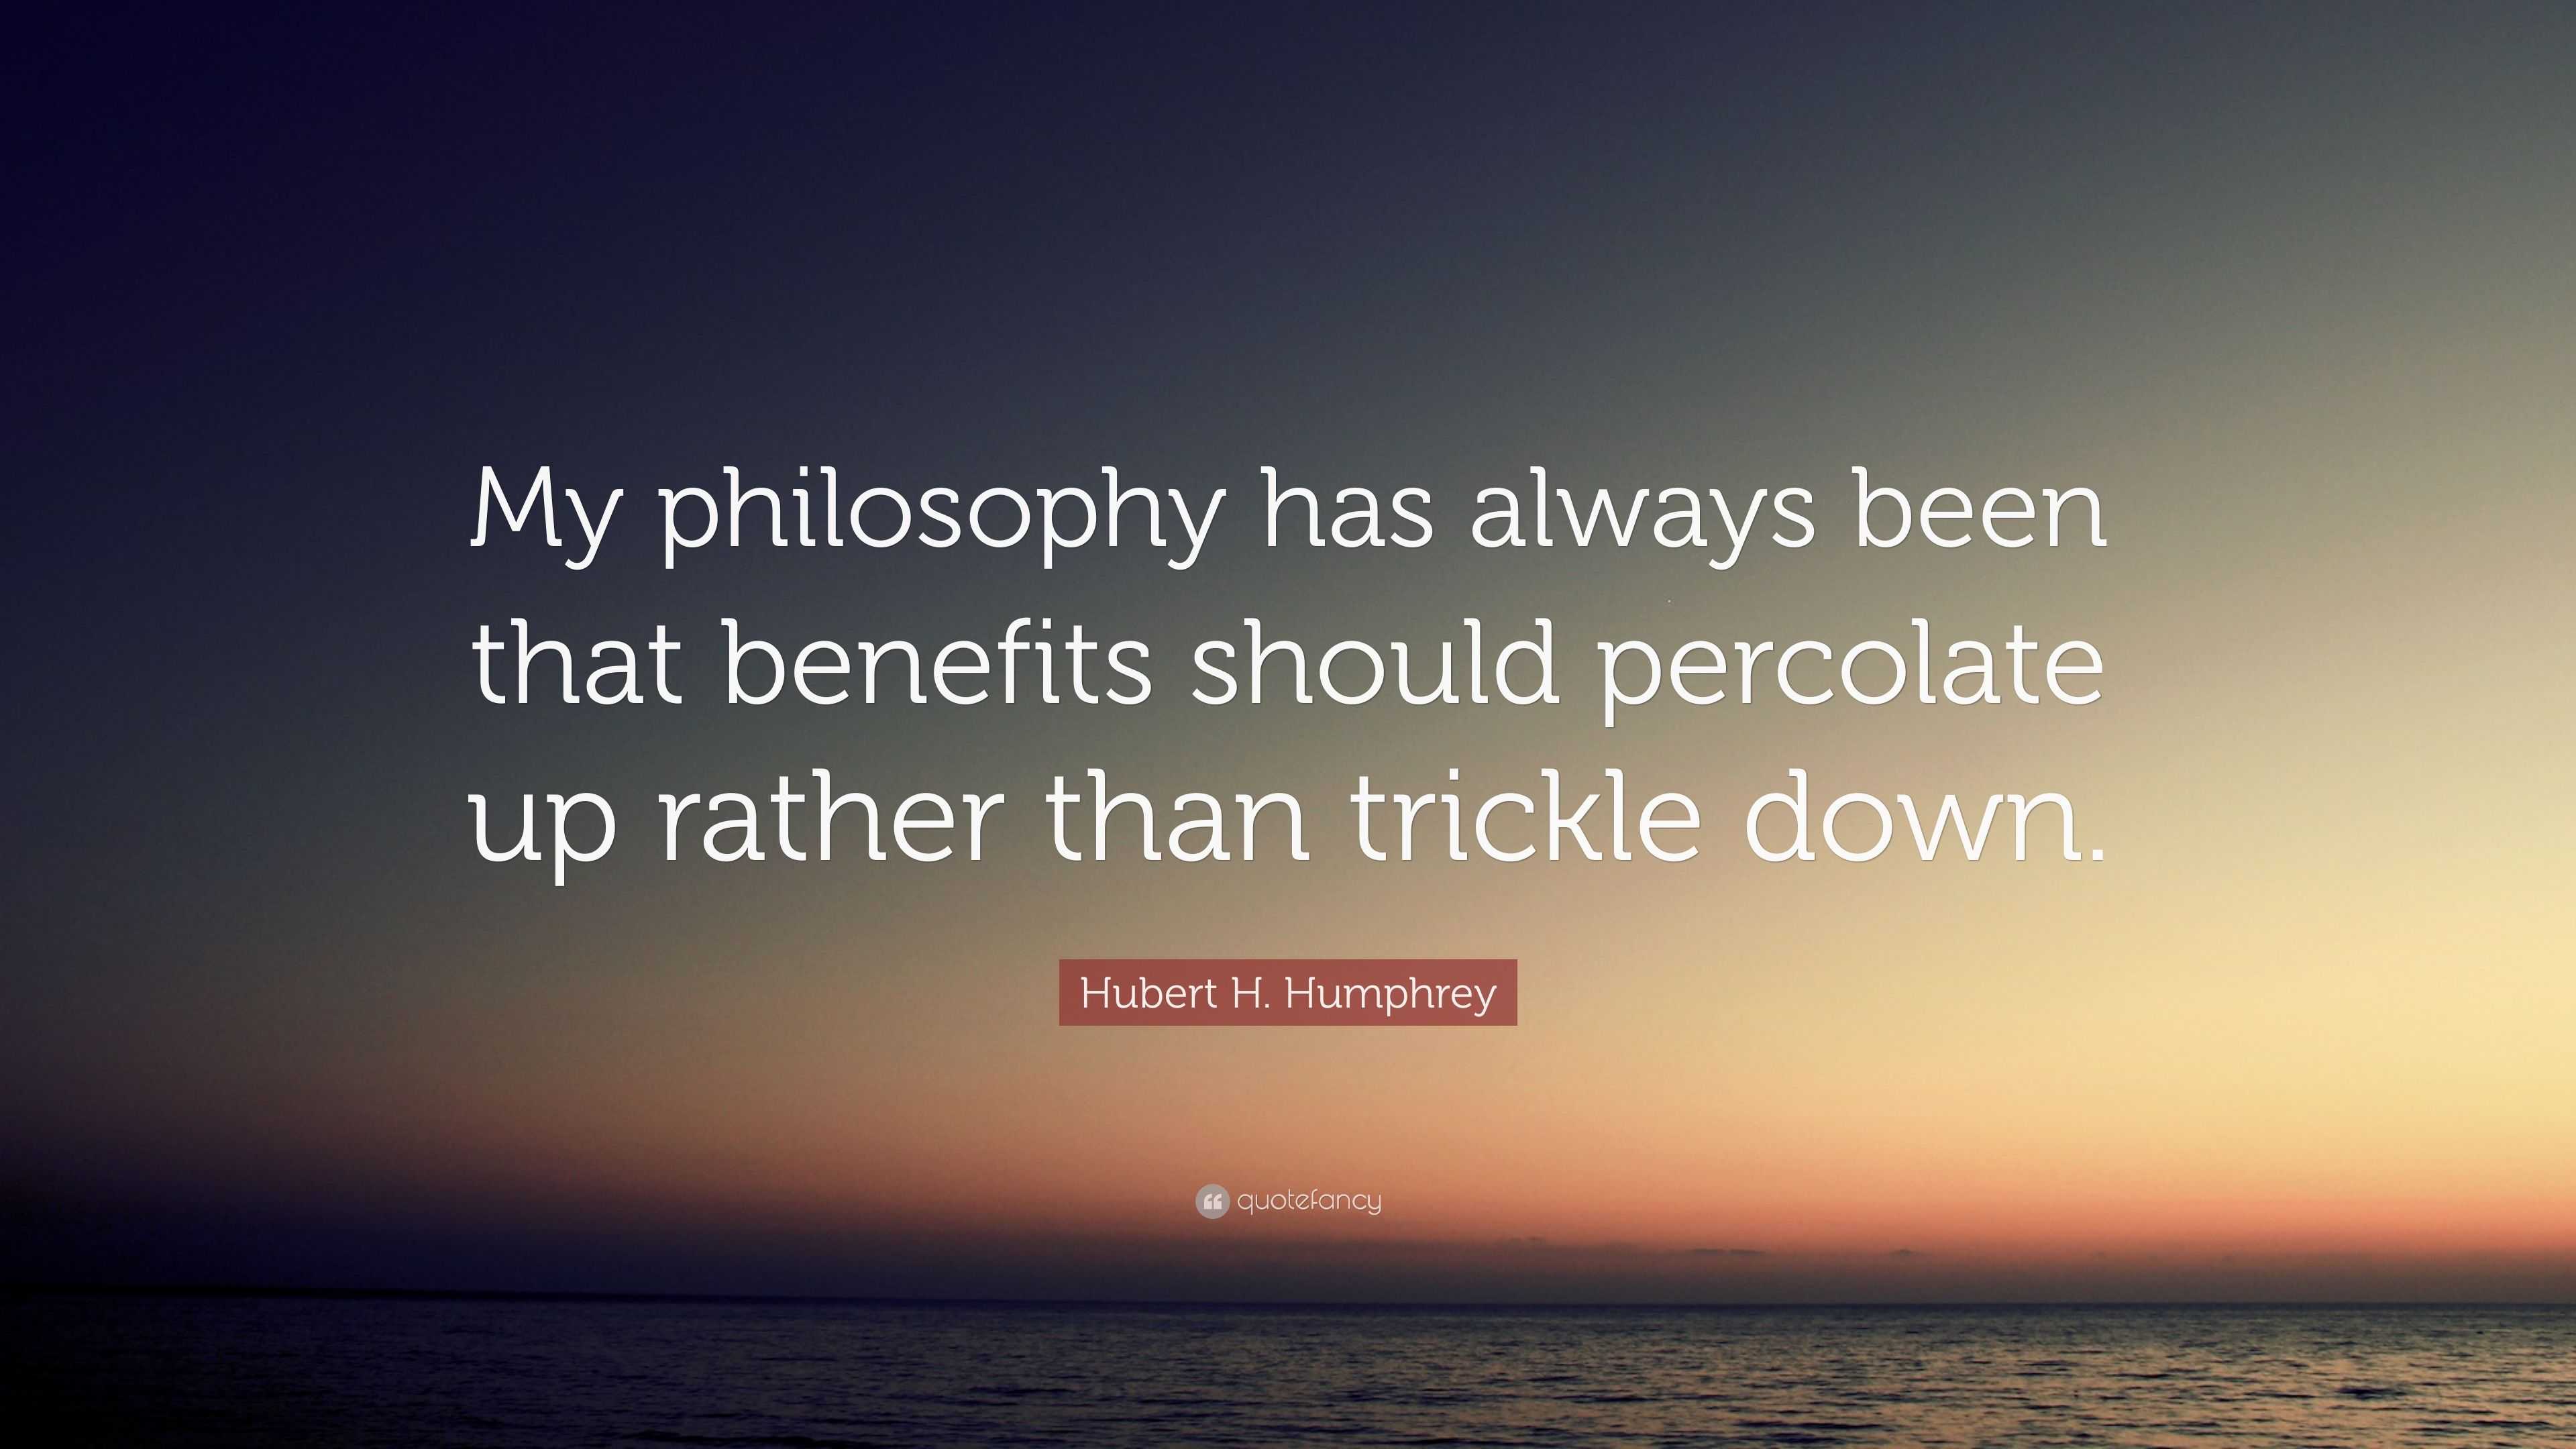 Hubert H. Humphrey Quote: “My philosophy has always been that benefits ...